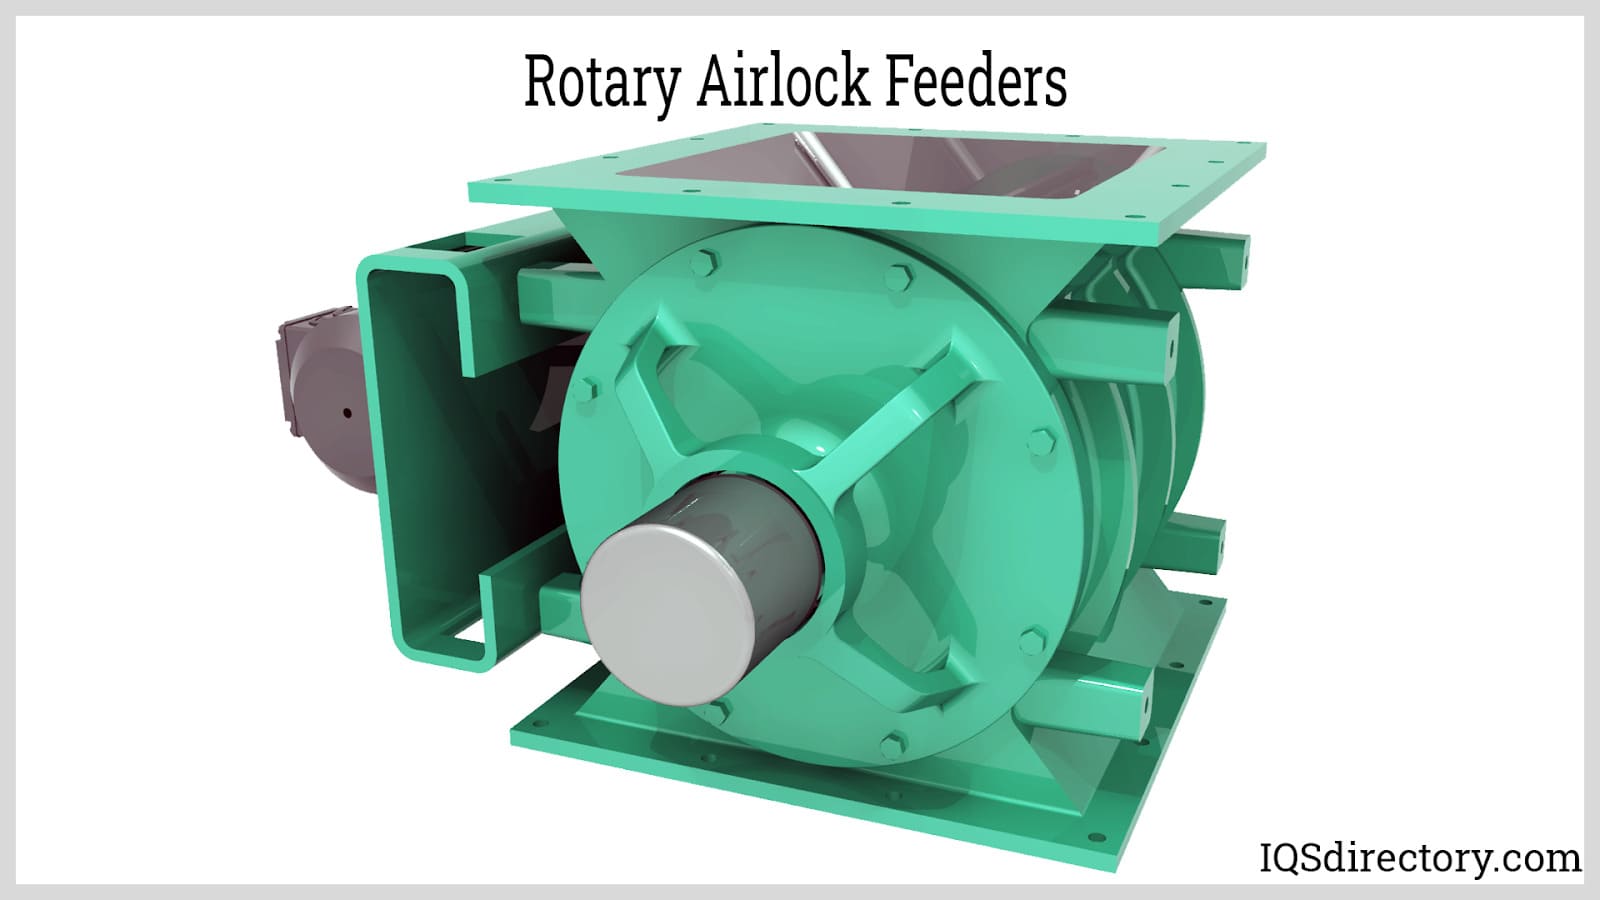 Rotary Airlock Feeders